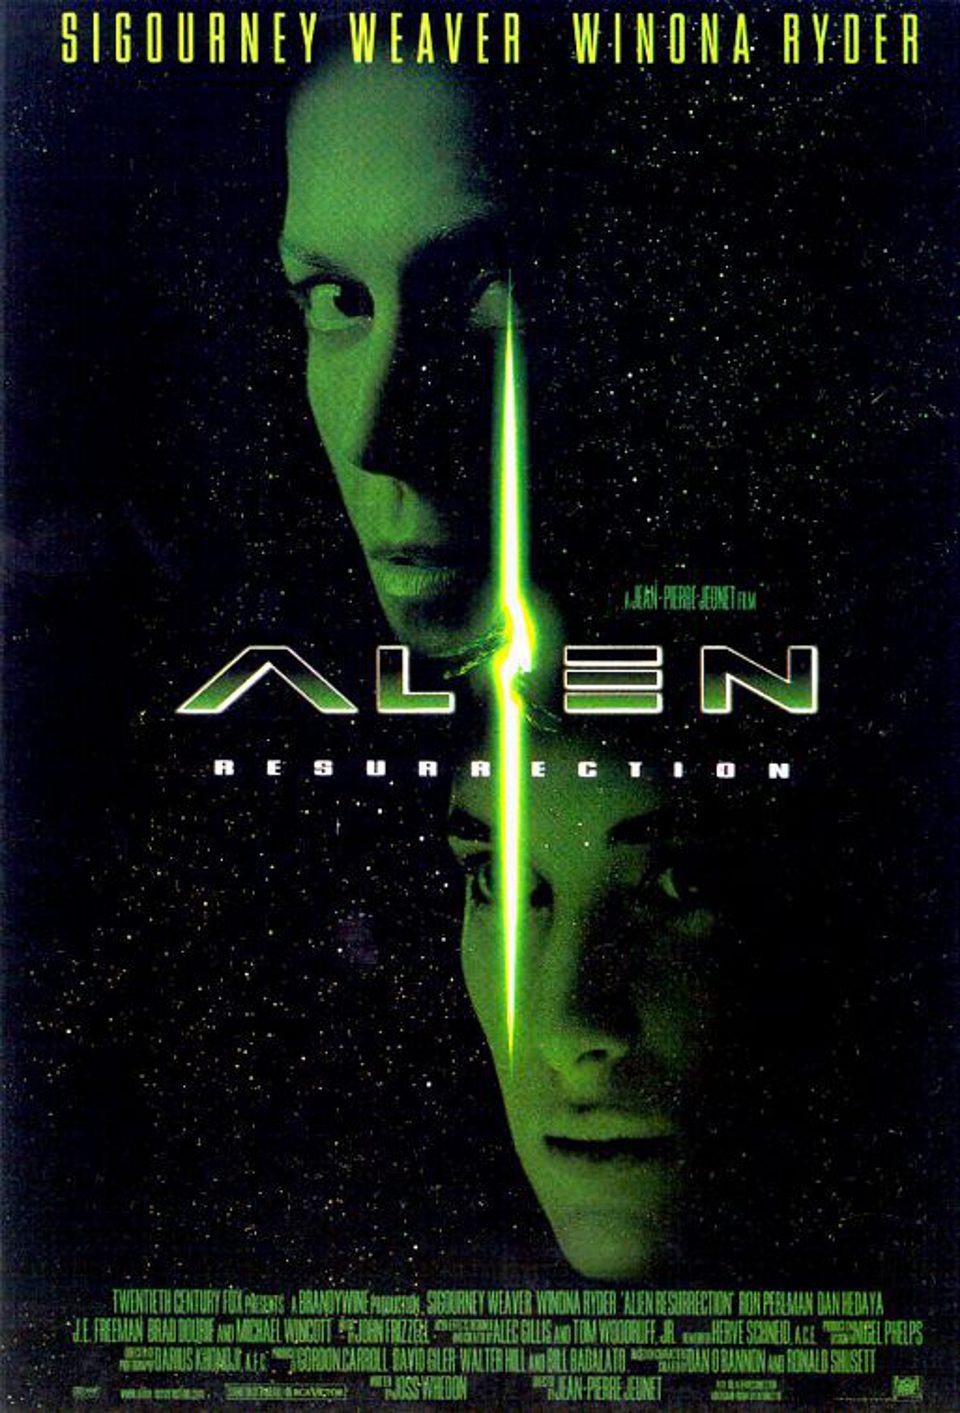 Estados Unidos poster for Alien: Resurrection